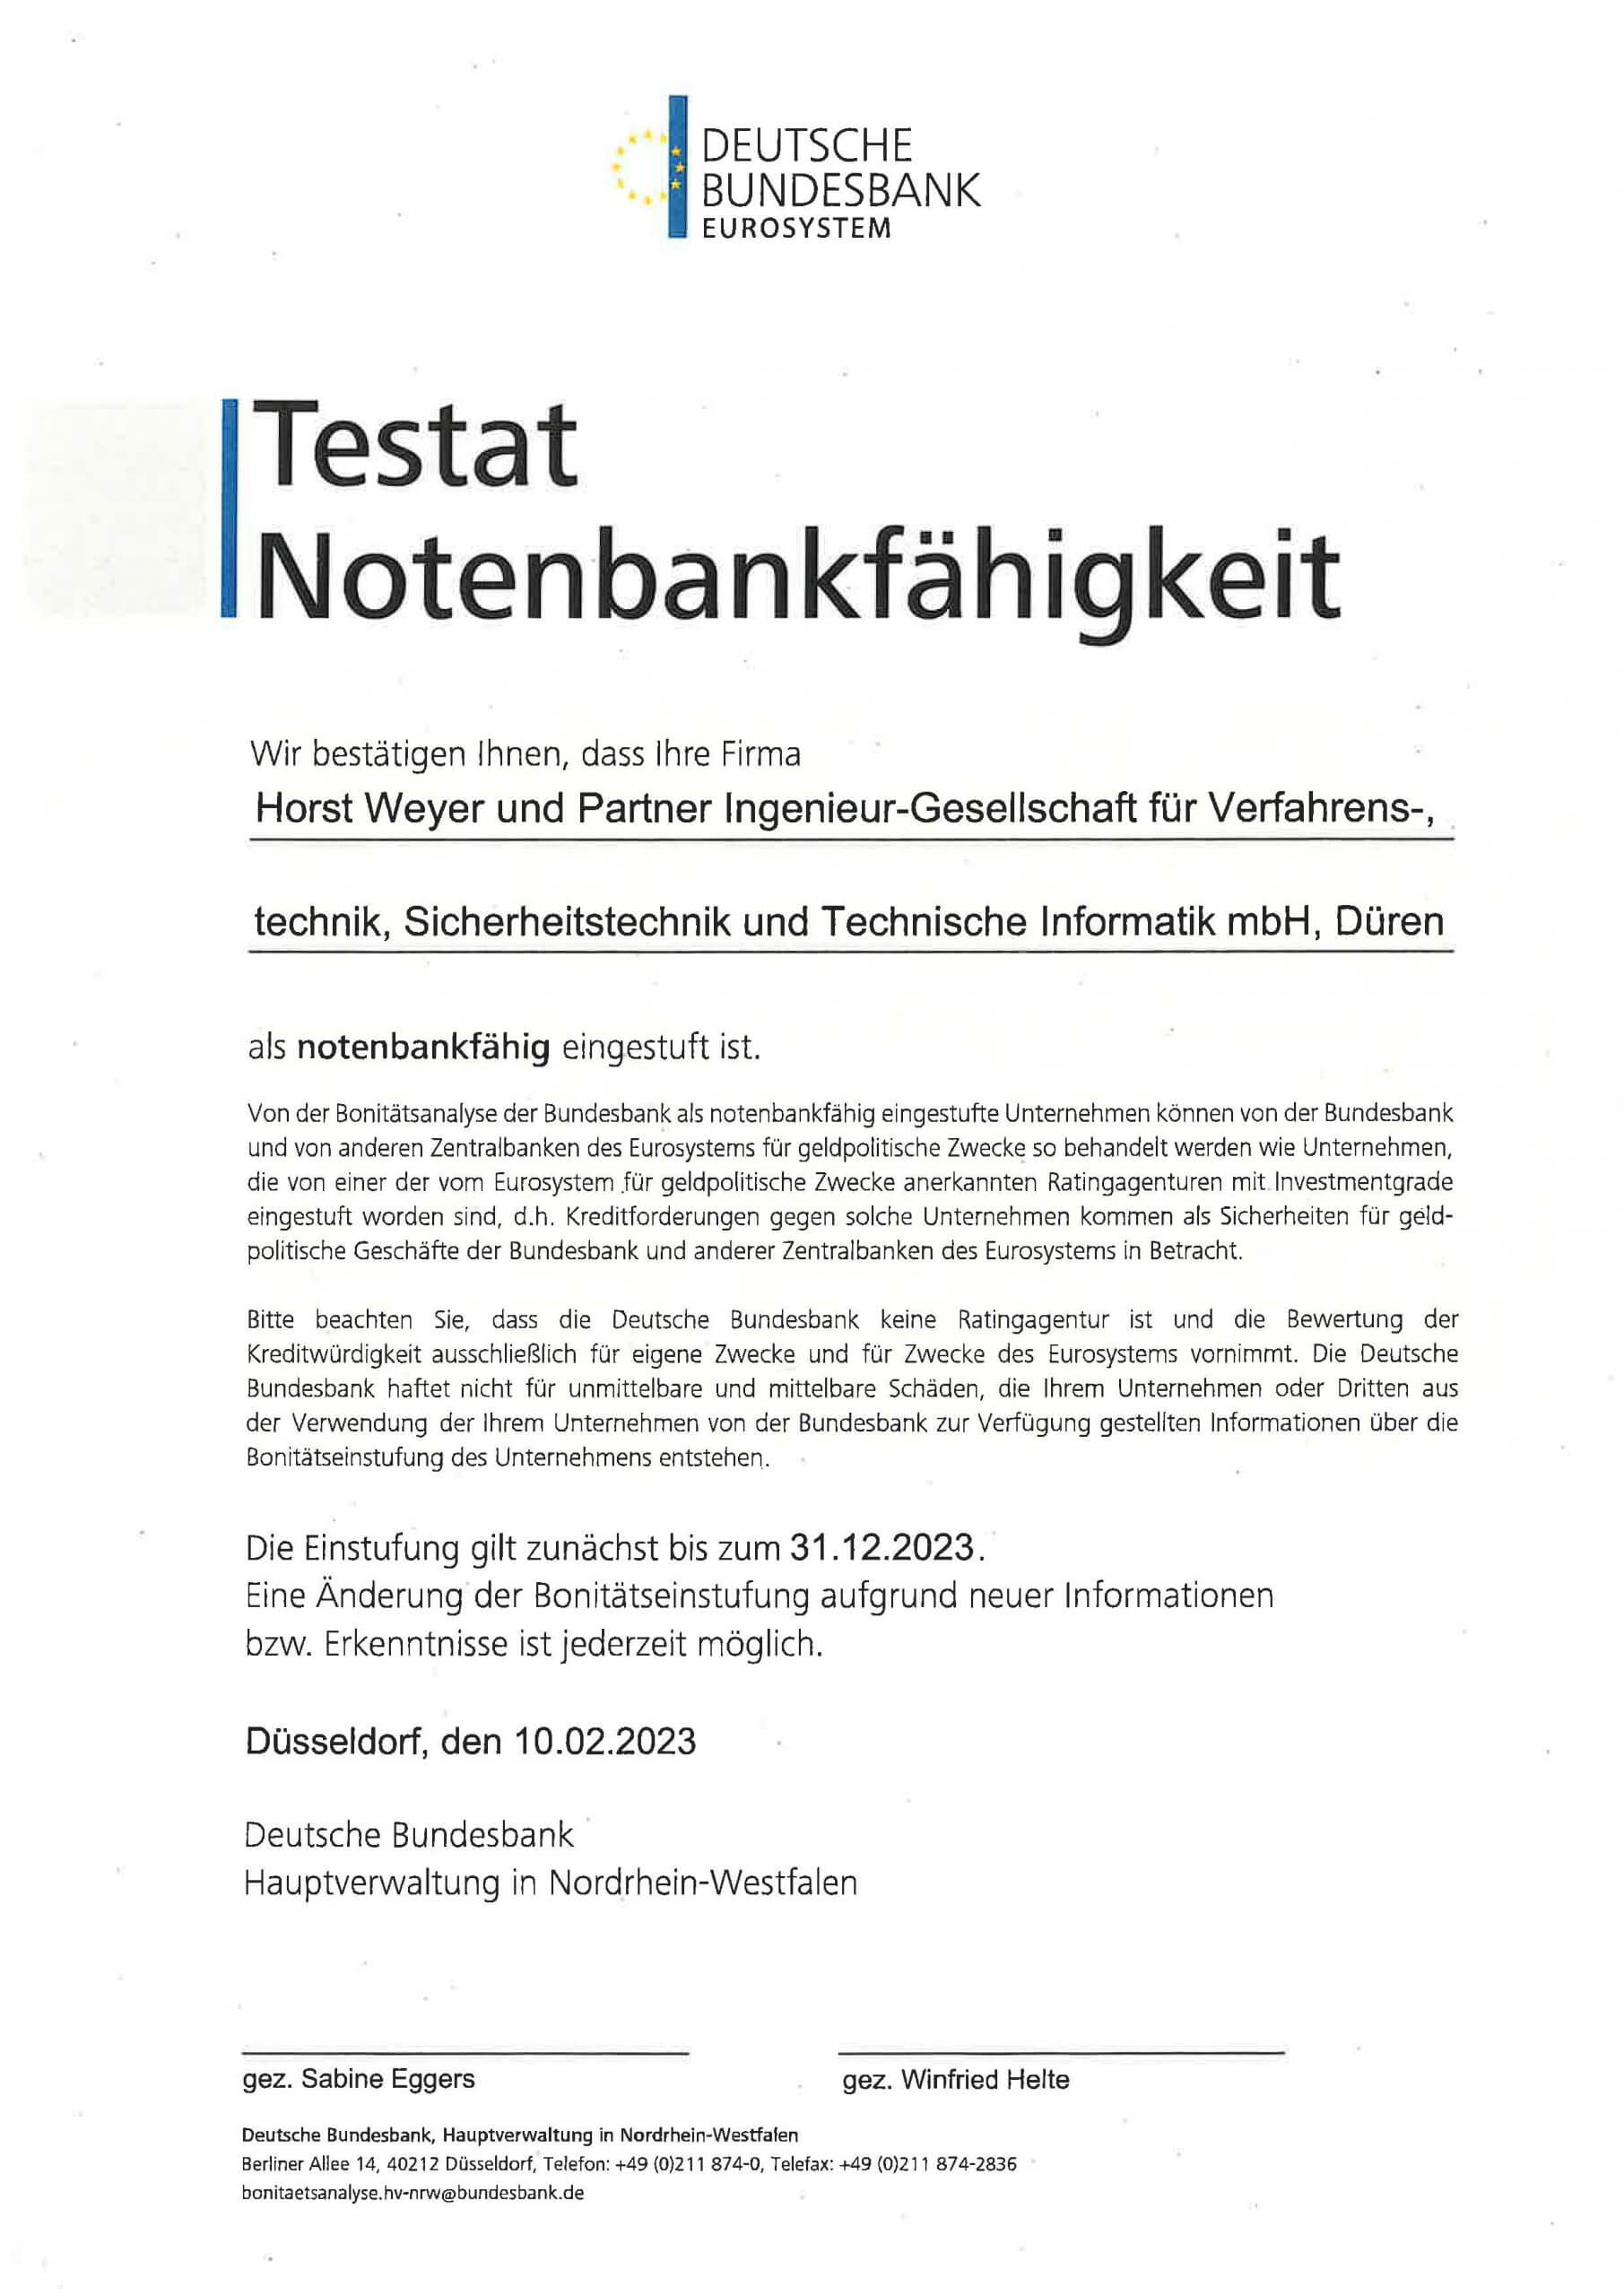 testat-notenbankfaehig-2023-horst-weyer-und-partner